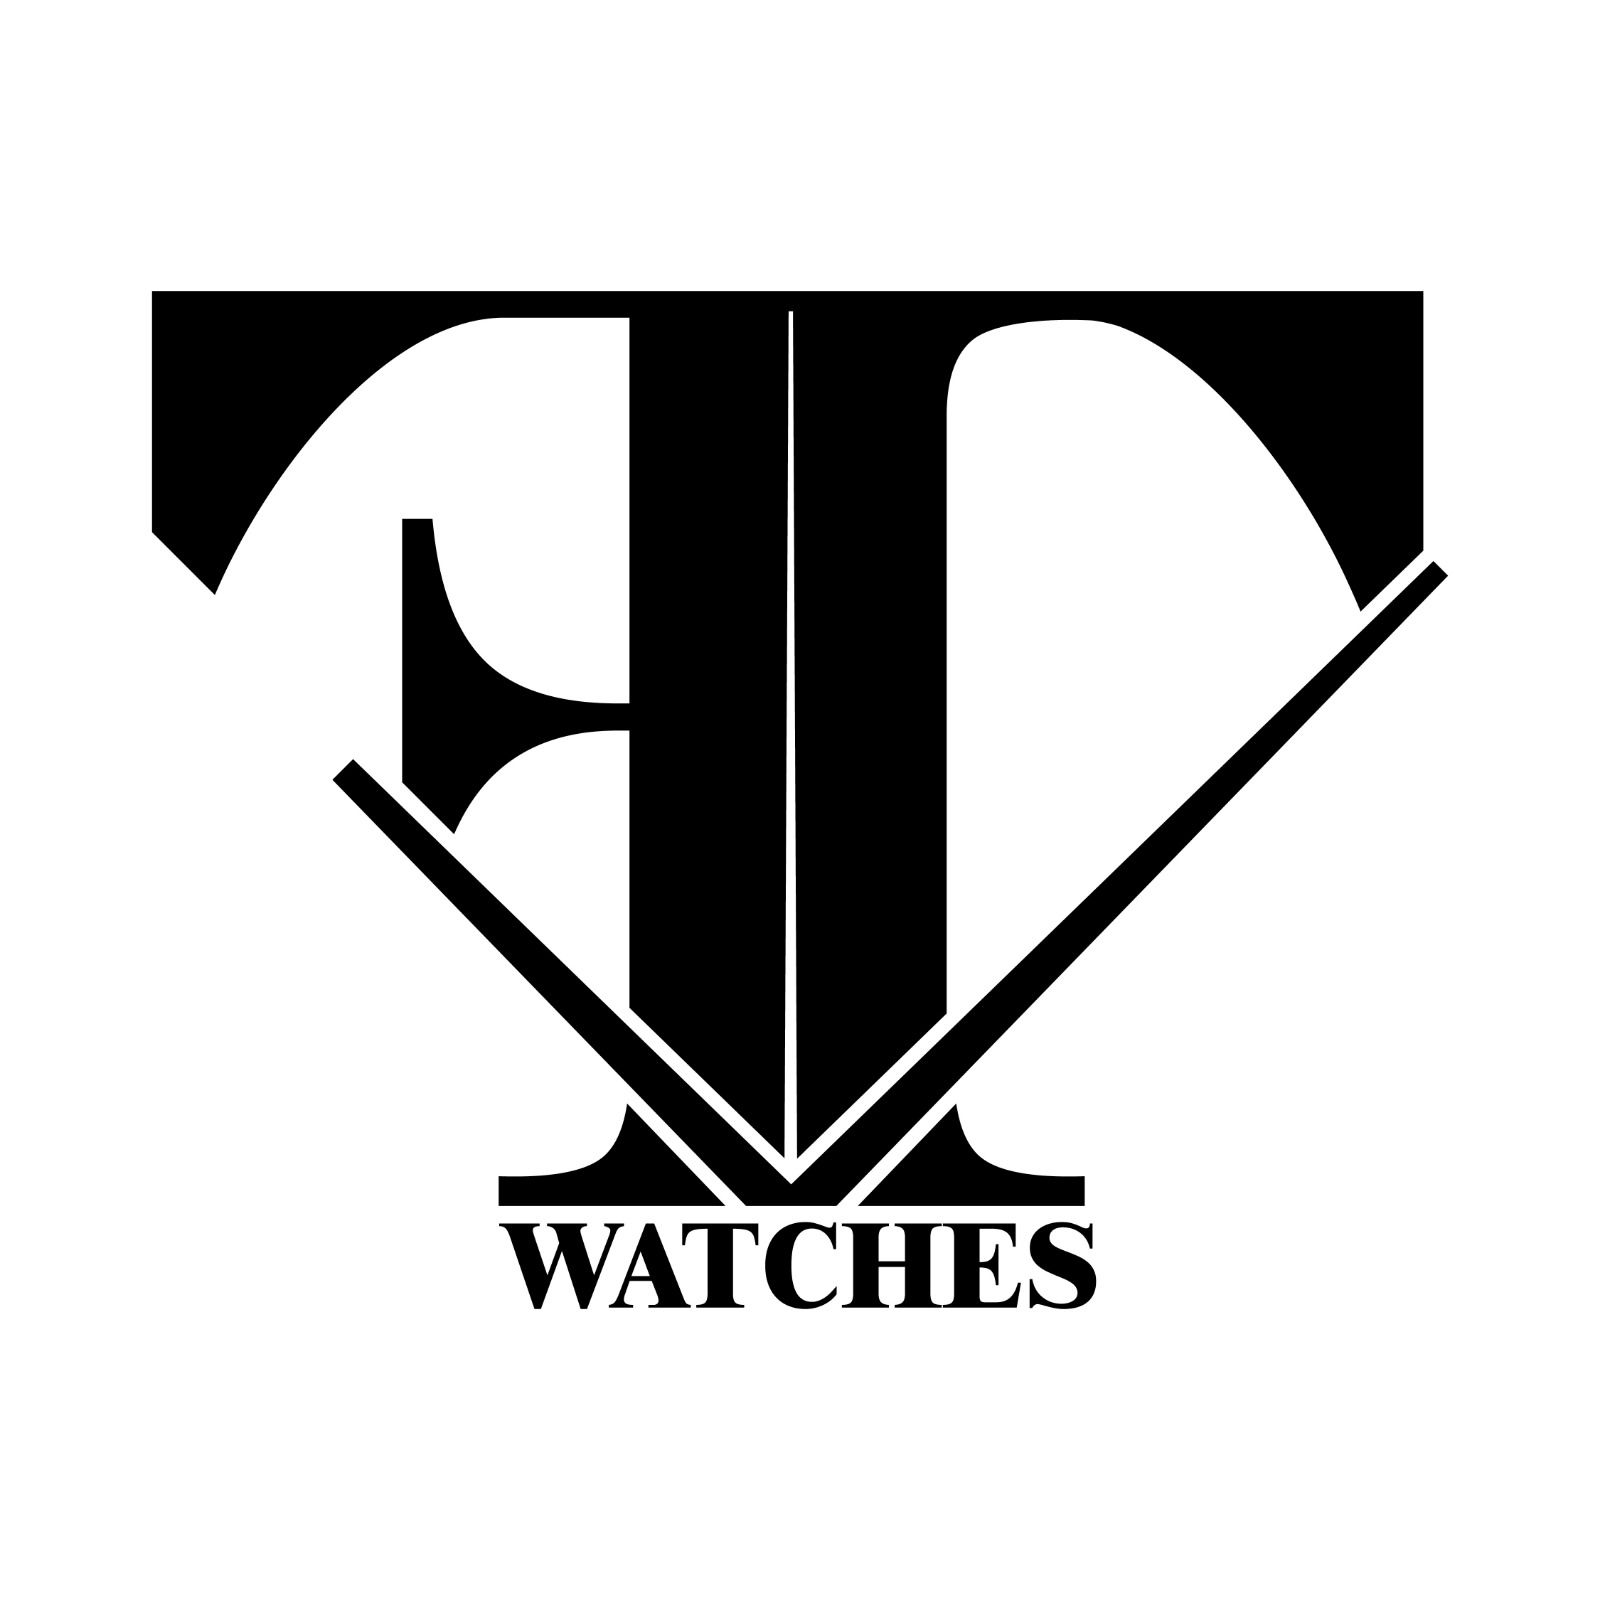 FT Watches - MondaniWeb